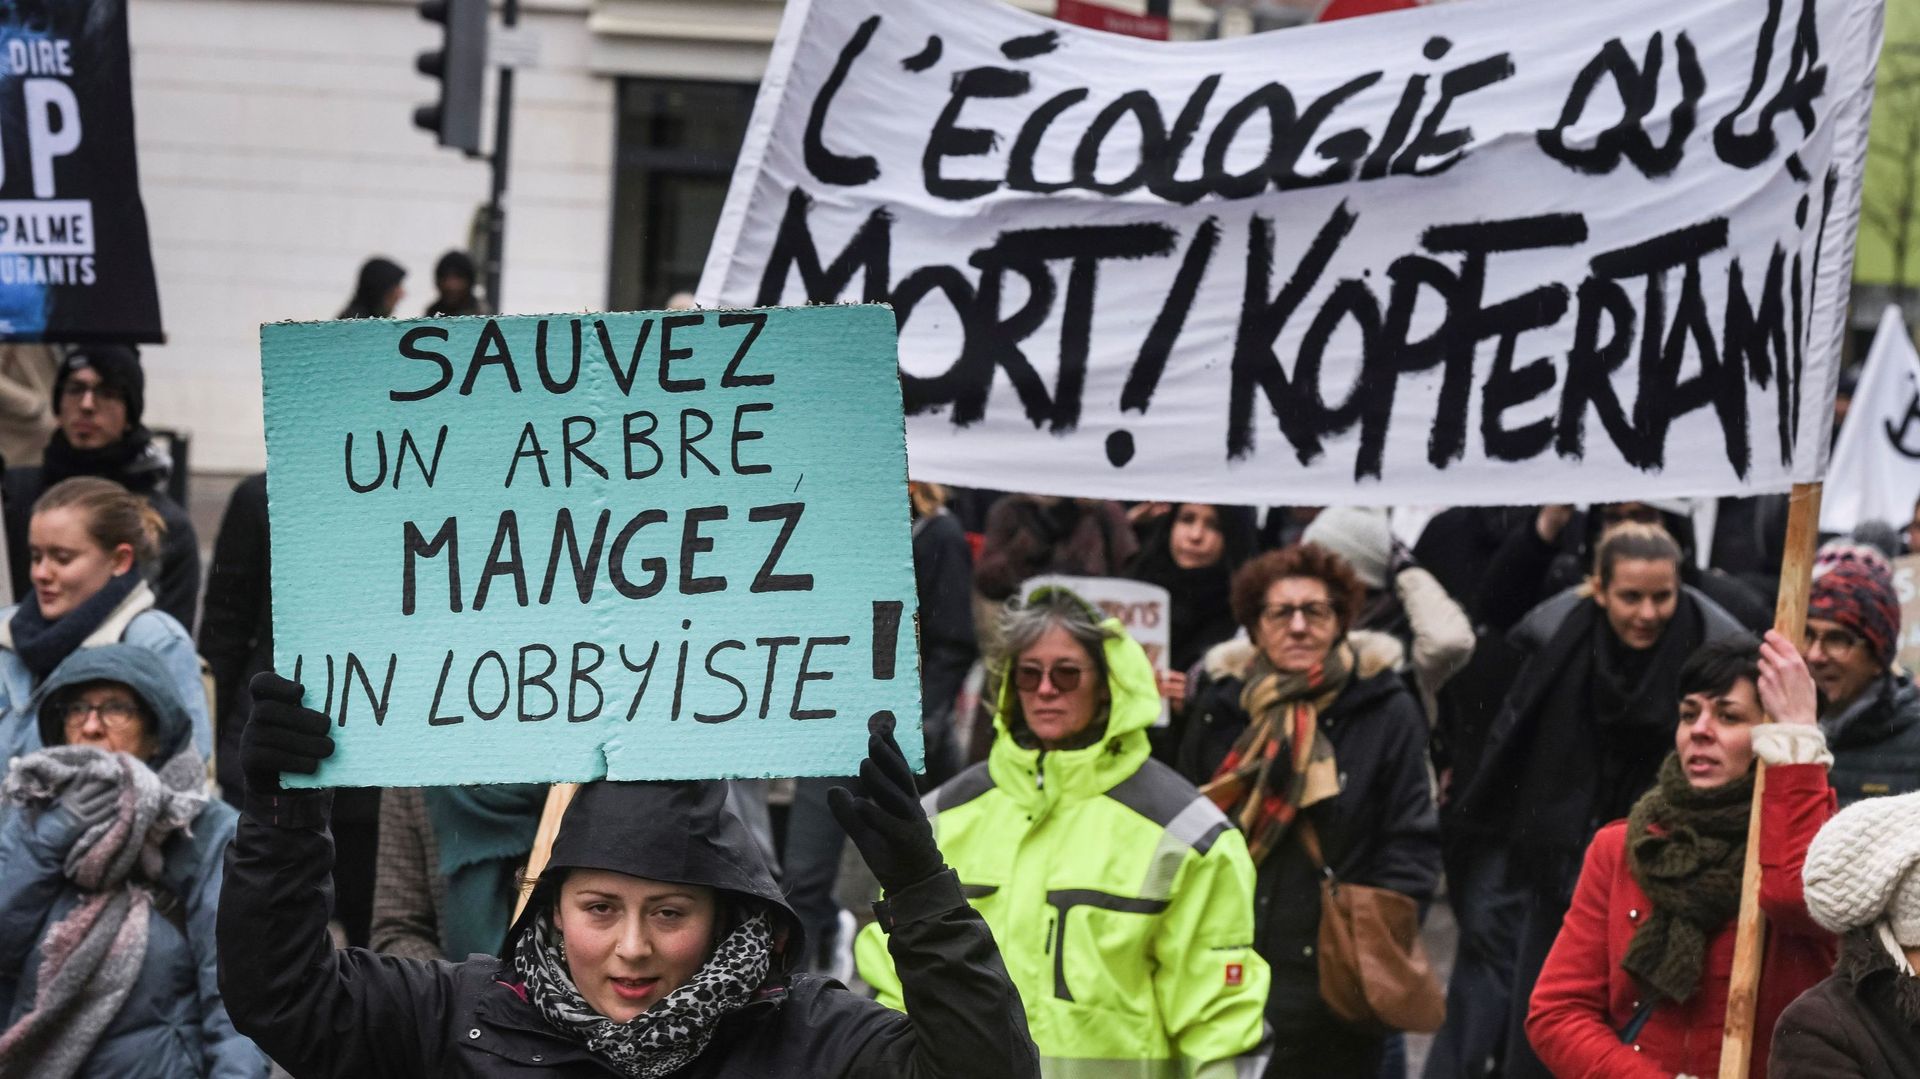 Marche pour le climat: "Le combat s’annonce long et difficile, mais nous ne lâcherons rien"